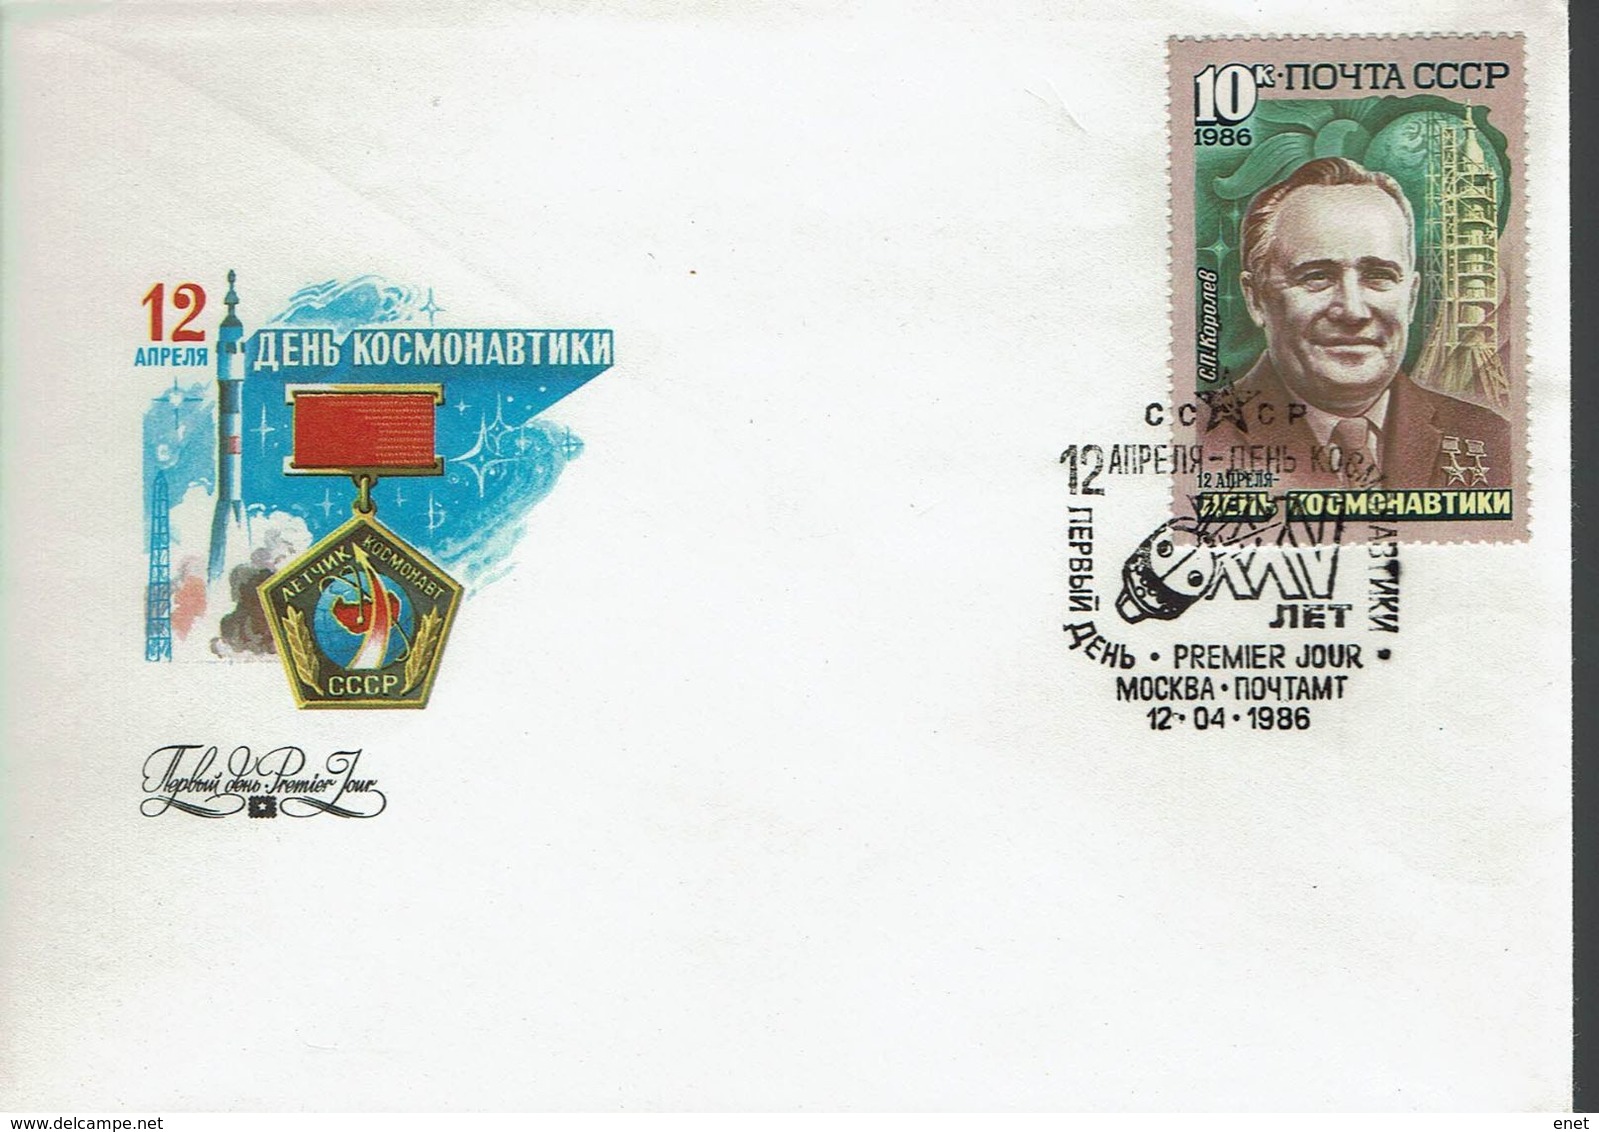 Sowjetunion USSR CCCP 1986 - Ziolkowskij, Koroljow, Jurij Gagarin - MiNr 5591-5593 FDC - UdSSR